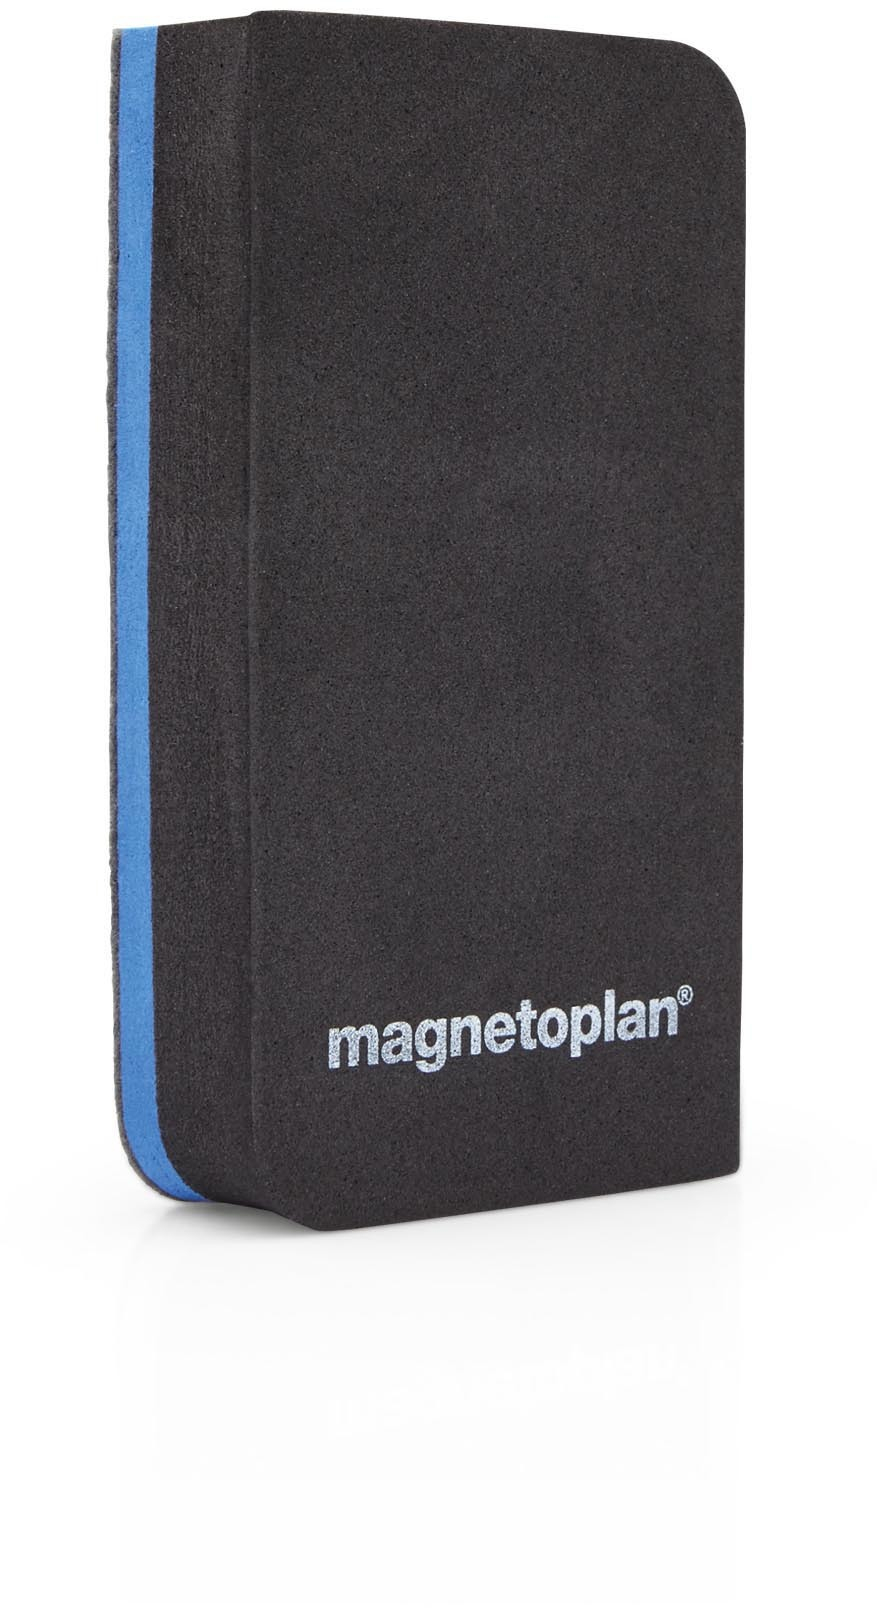 MAGNETOPLAN Tafelwischer Pro+ 12289 magnetisch